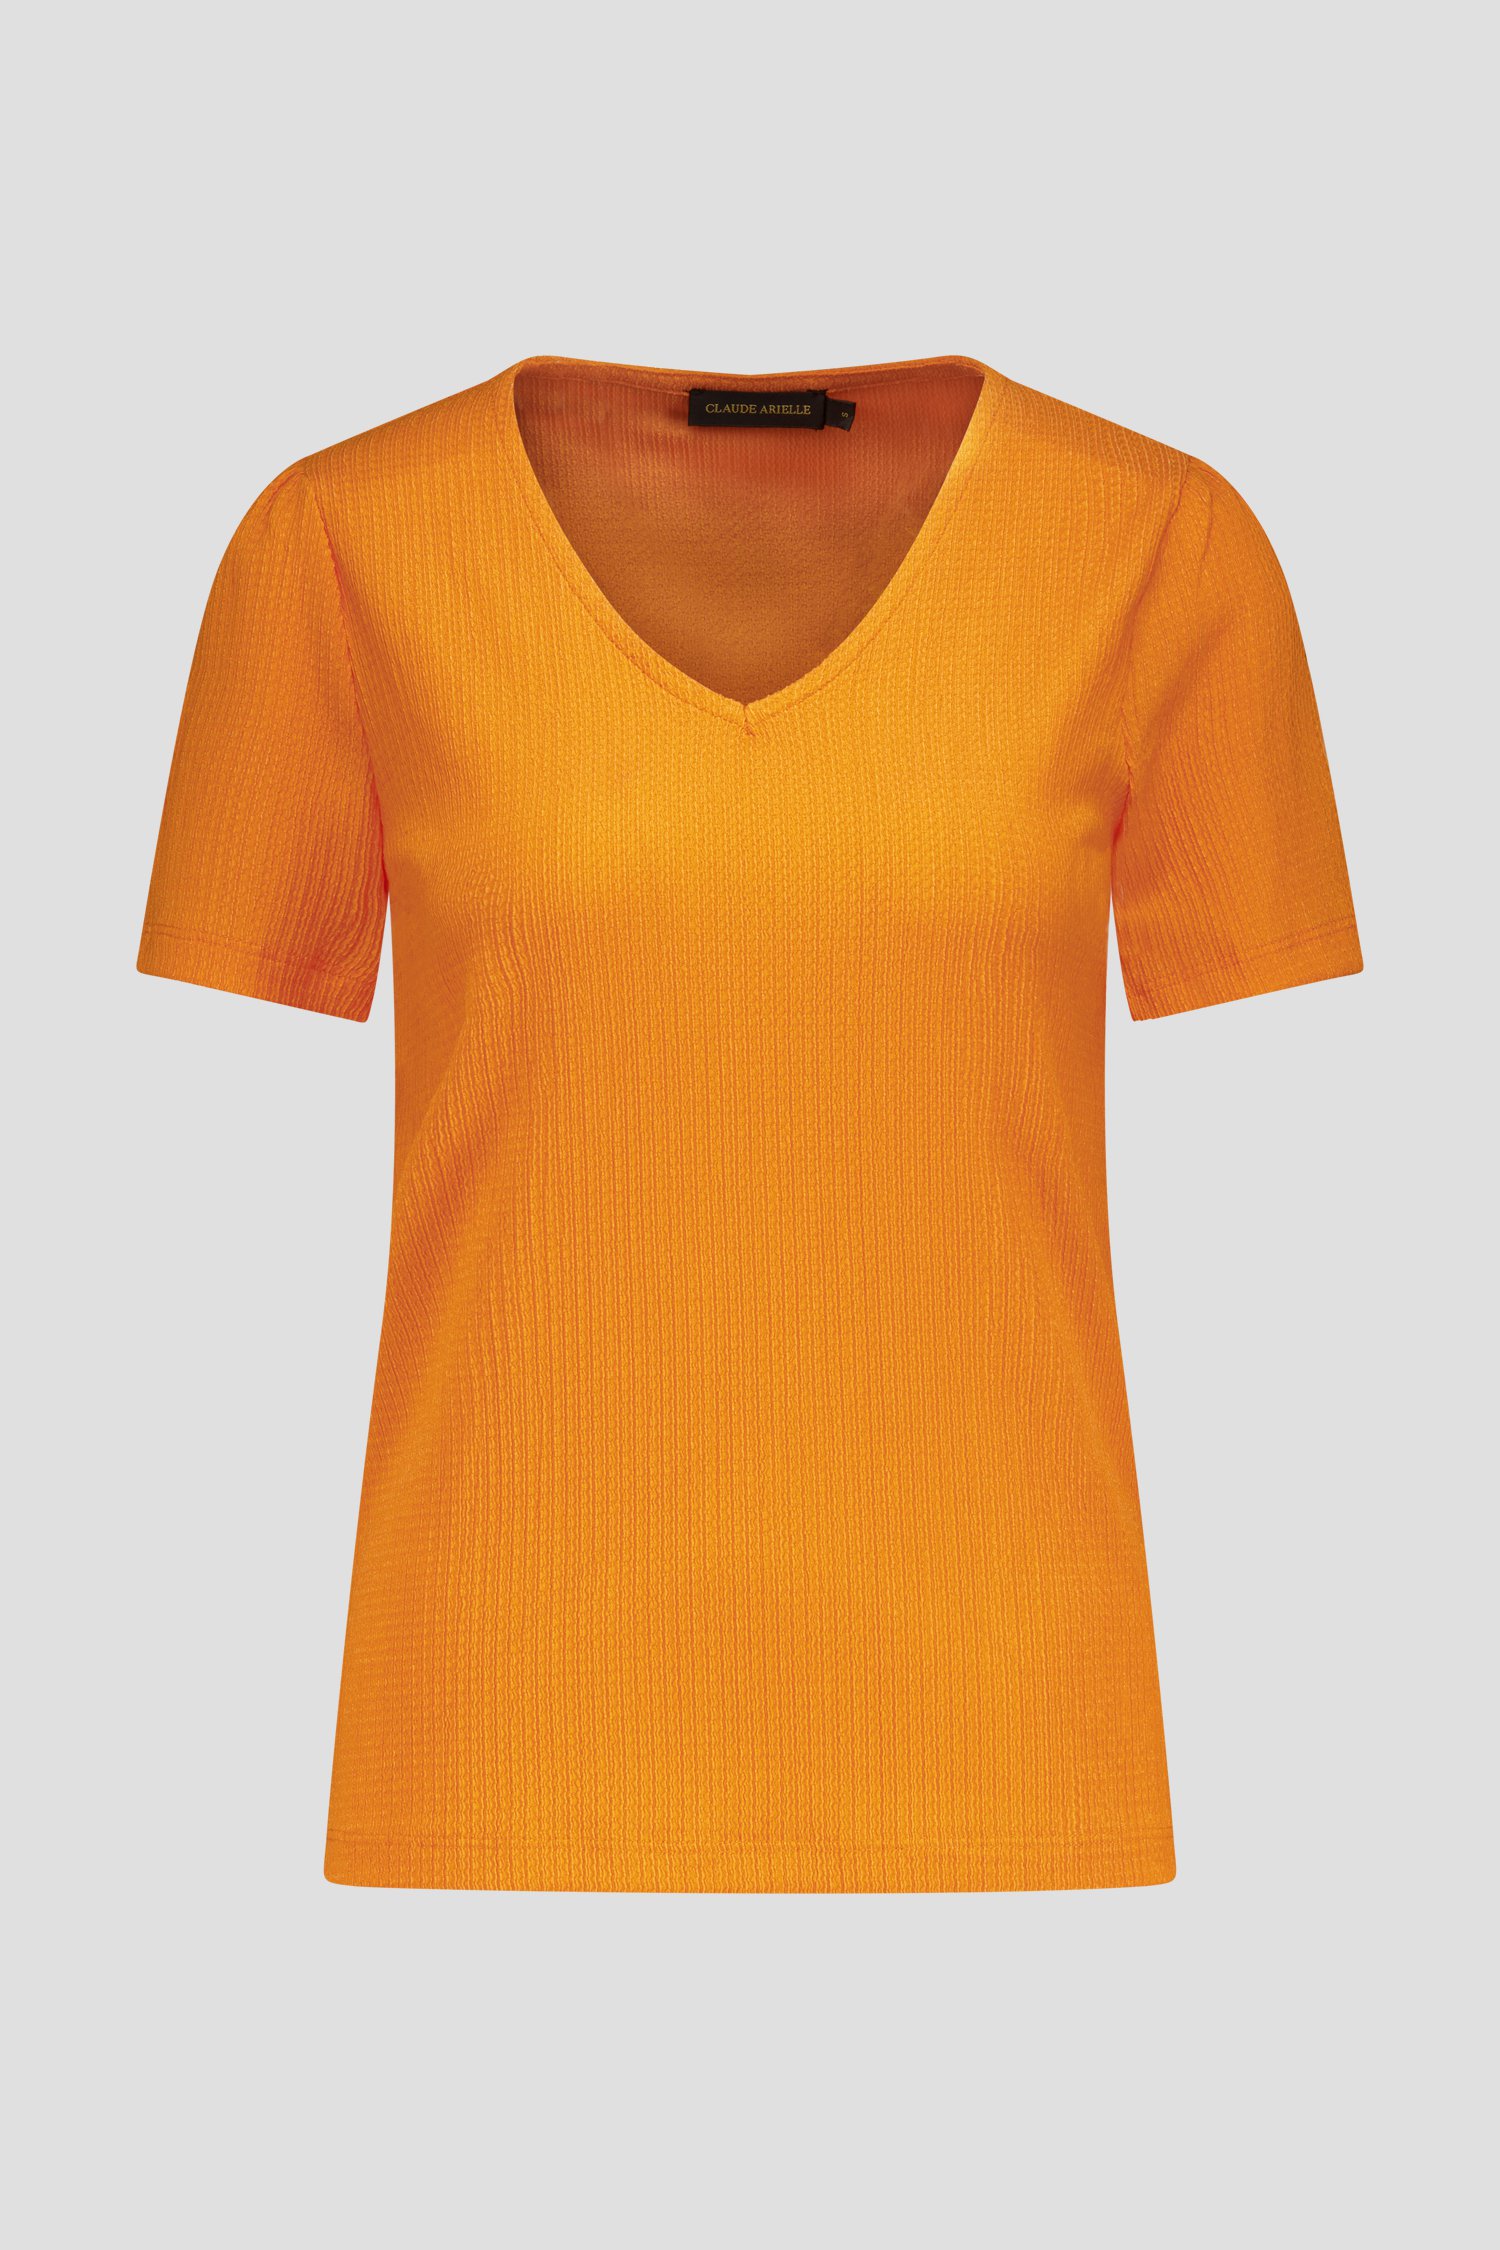 T-shirt orange à texture fine de Claude Arielle pour Femmes